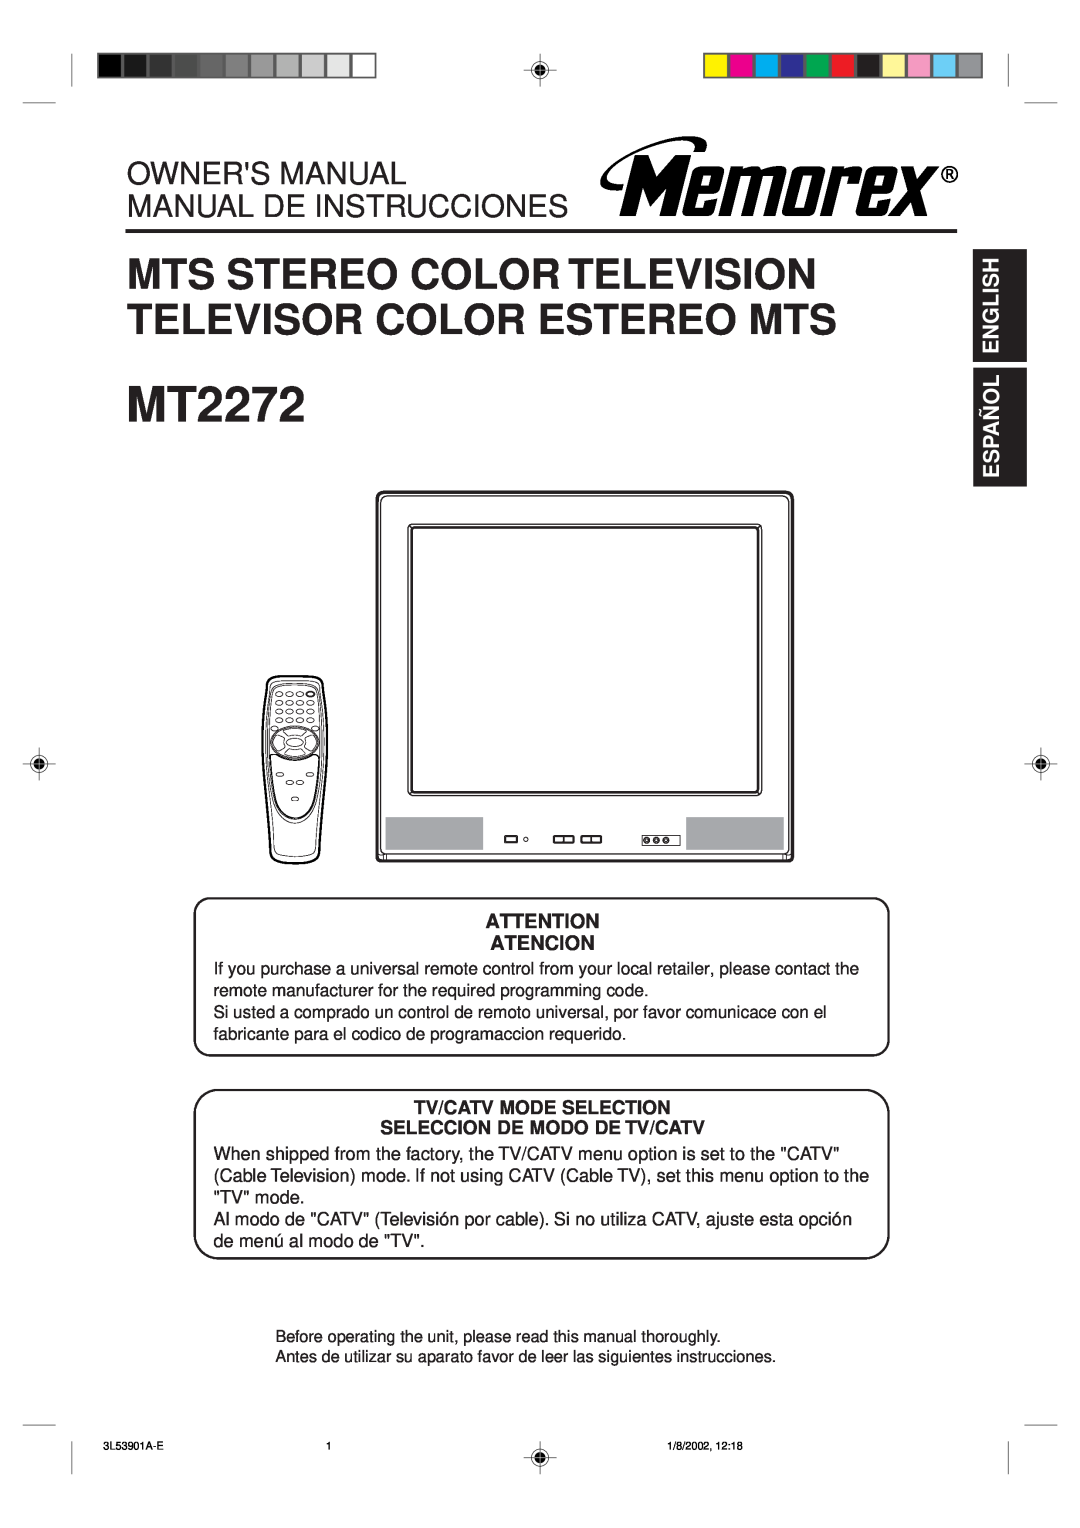 Memorex MT2272 owner manual Español English, Tv/Catv Mode Selection Seleccion De Modo De Tv/Catv, Atencion 